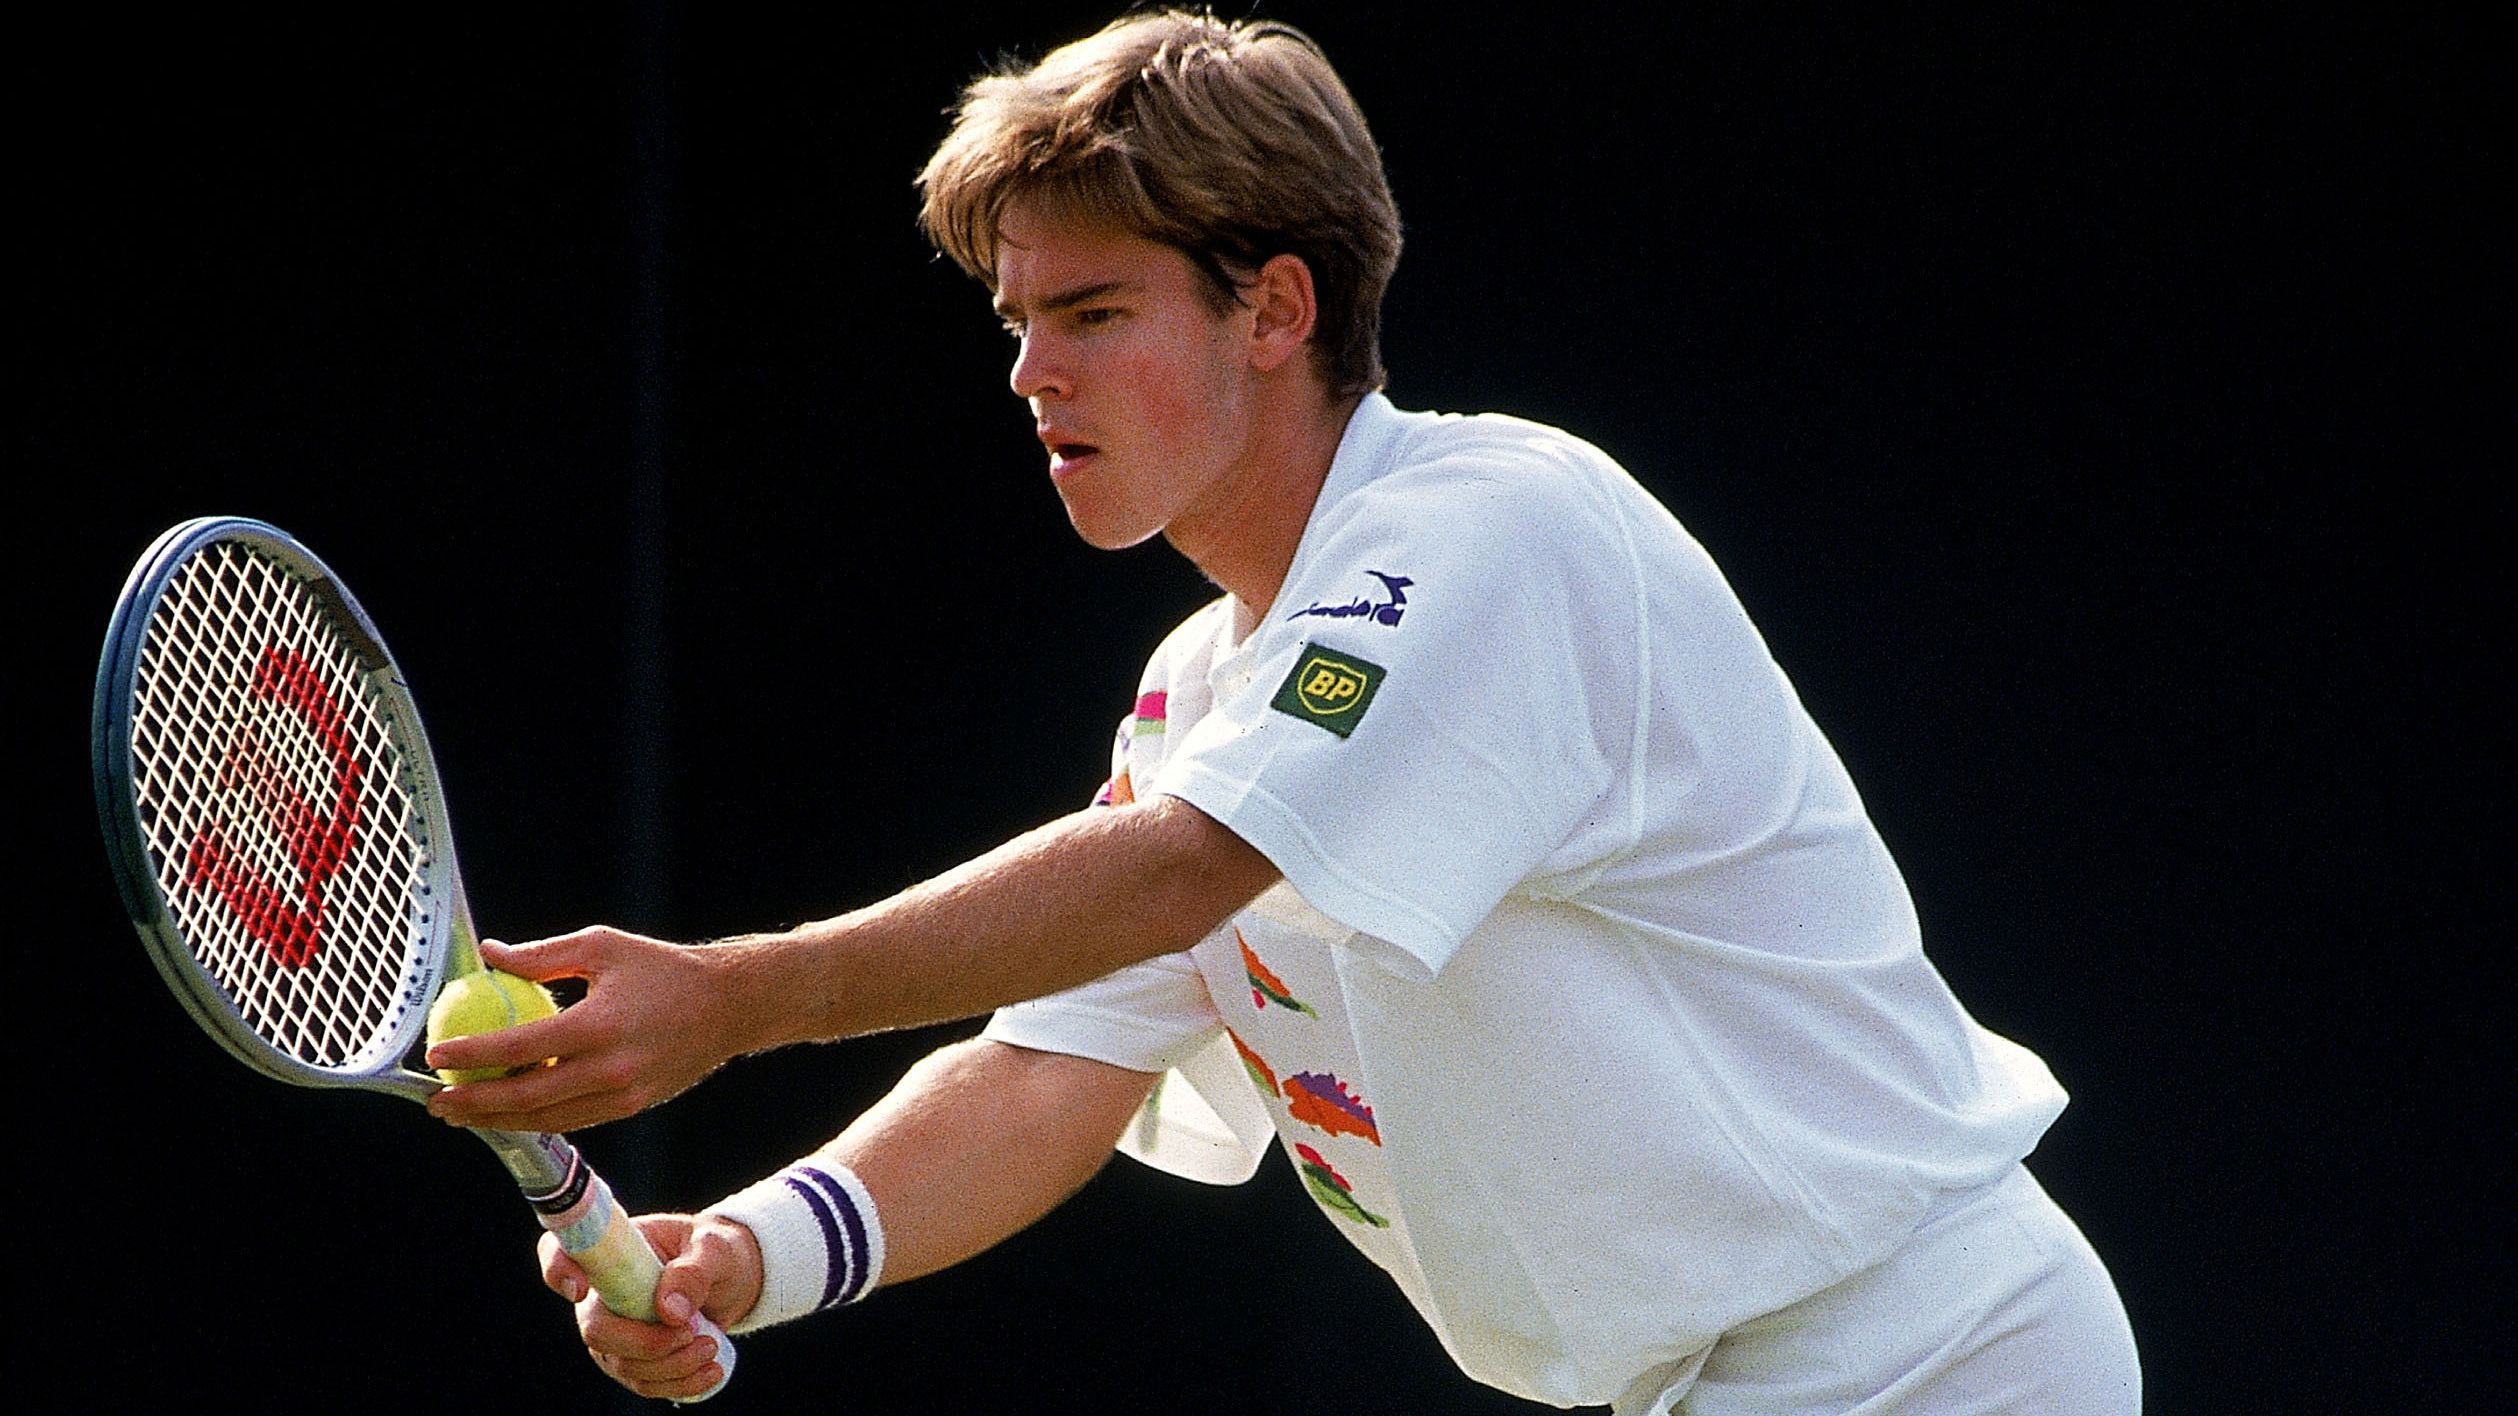 How teenage Todd Woodbridge's stunning win kicked off new Australian Open era